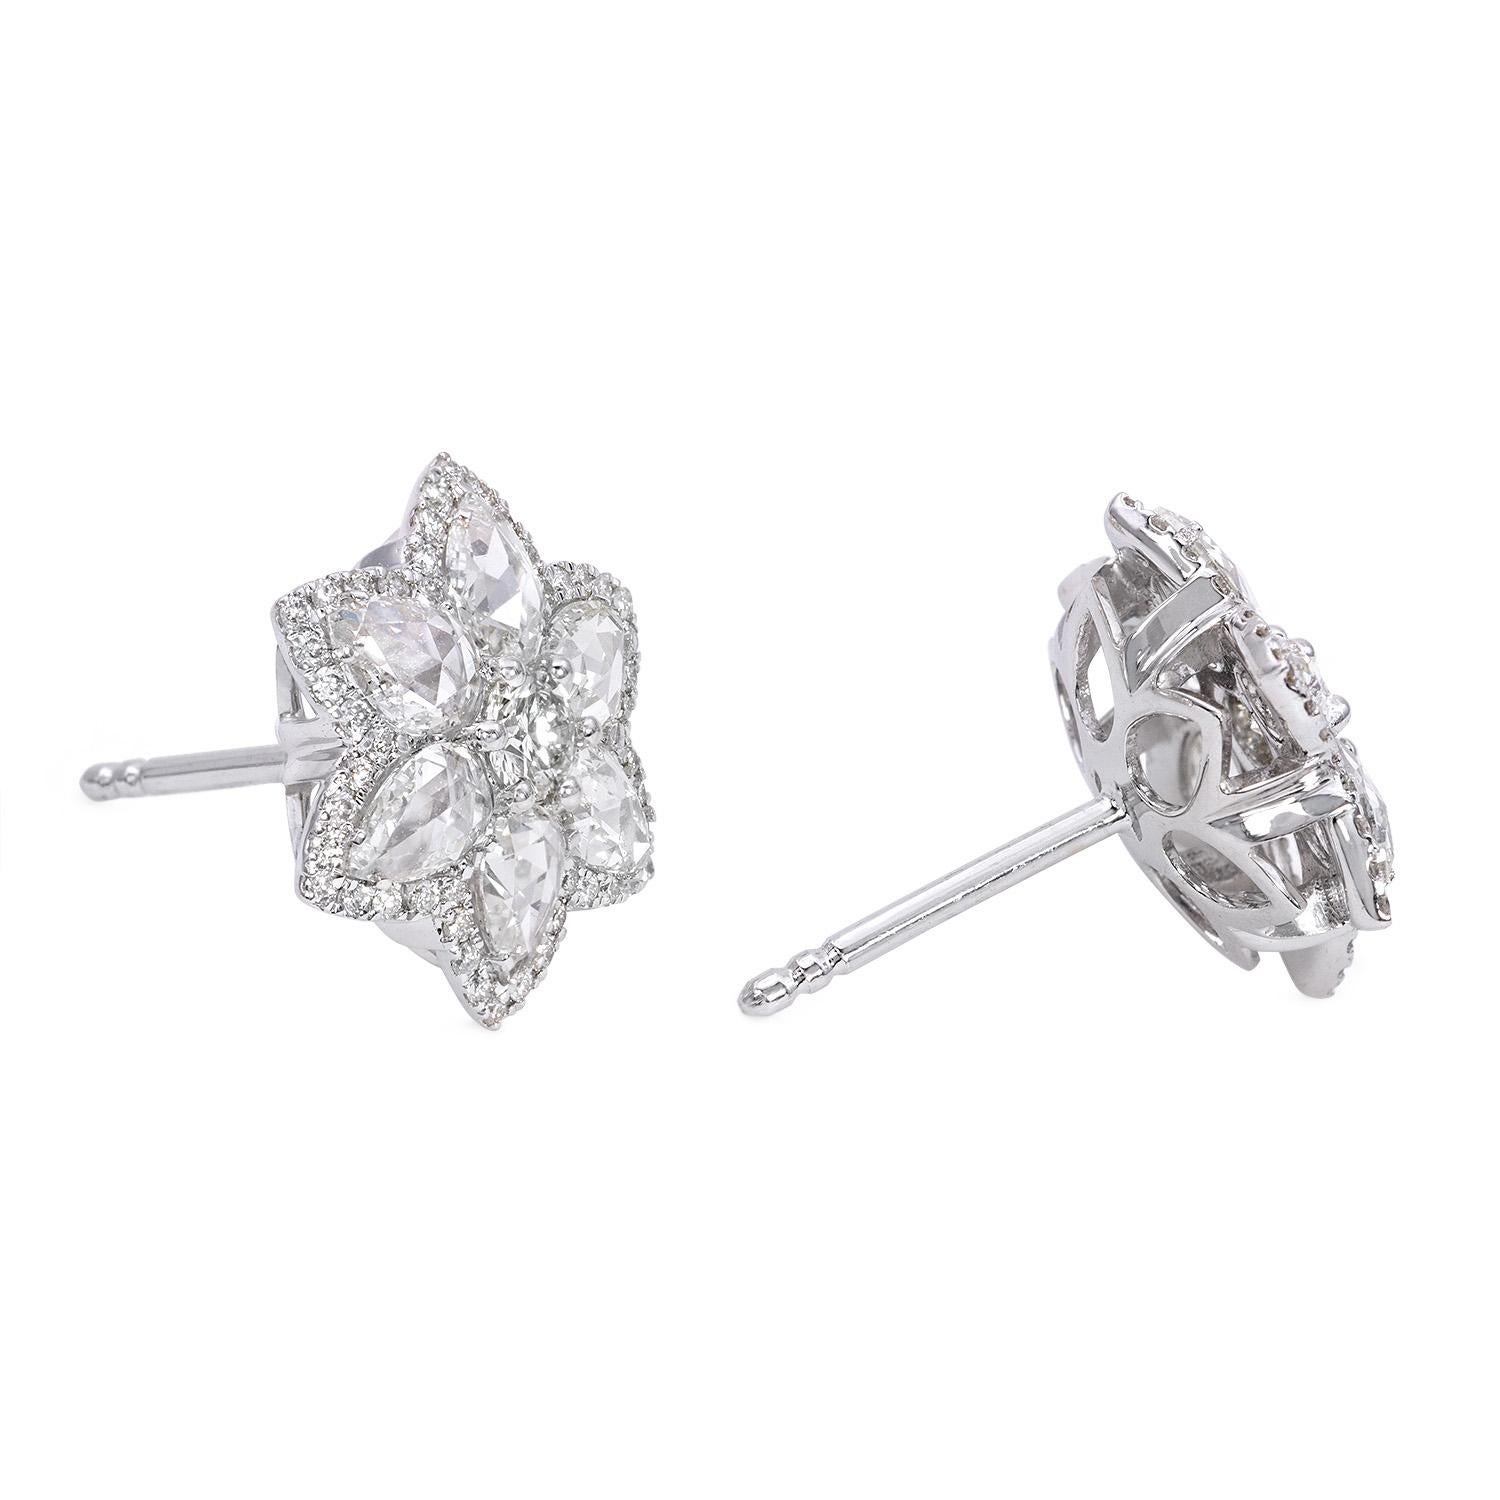 Les boucles d'oreilles Venetian, qui figurent parmi les meilleures ventes de la collection WhiteRose, sont ornées d'un diamant rond de 0,50 carat de taille brillant, entouré de six diamants de taille rose. Les boucles d'oreilles vénitiennes peuvent